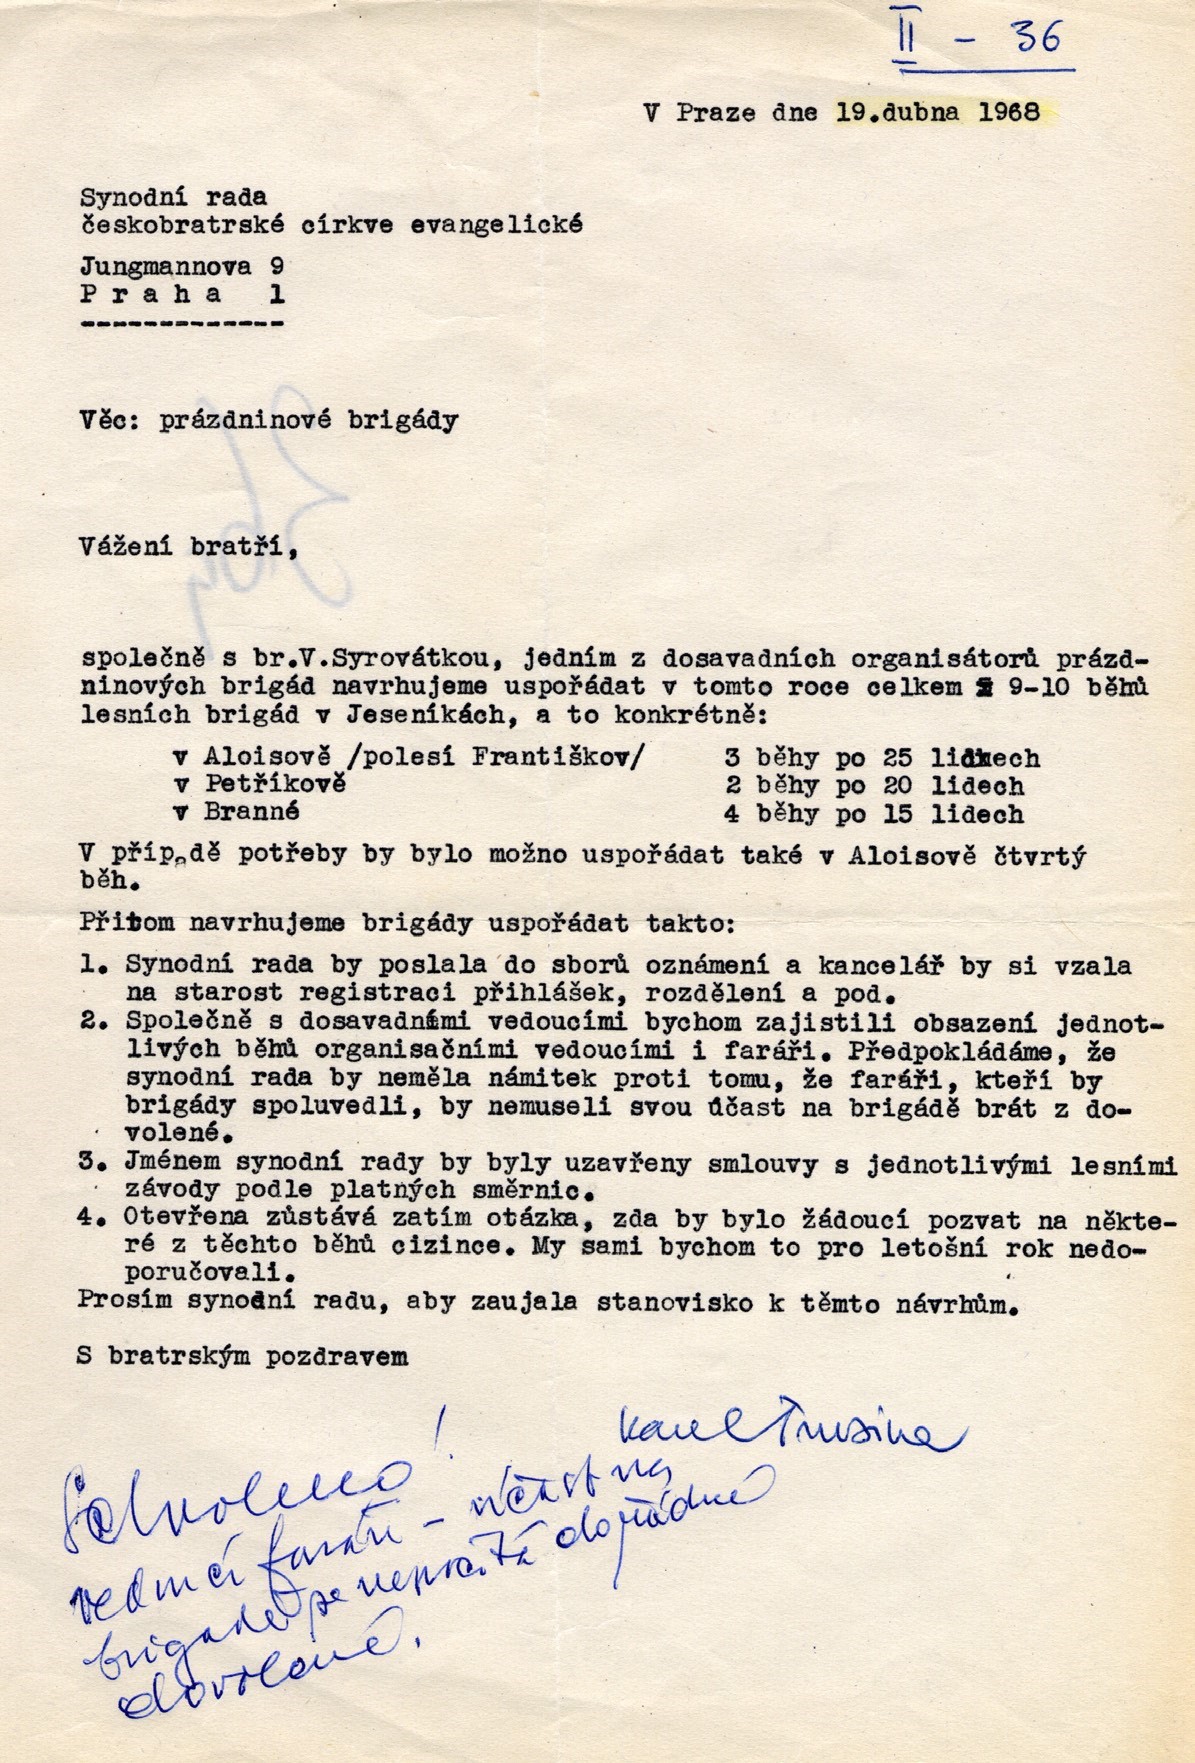 Dopis Káji Trusiny na Synodní radu ČCE v dubnu 1968 o převzetí organizace prázdninových brigád. Synodní senior V. Kejř rukou připsal „Schváleno!“